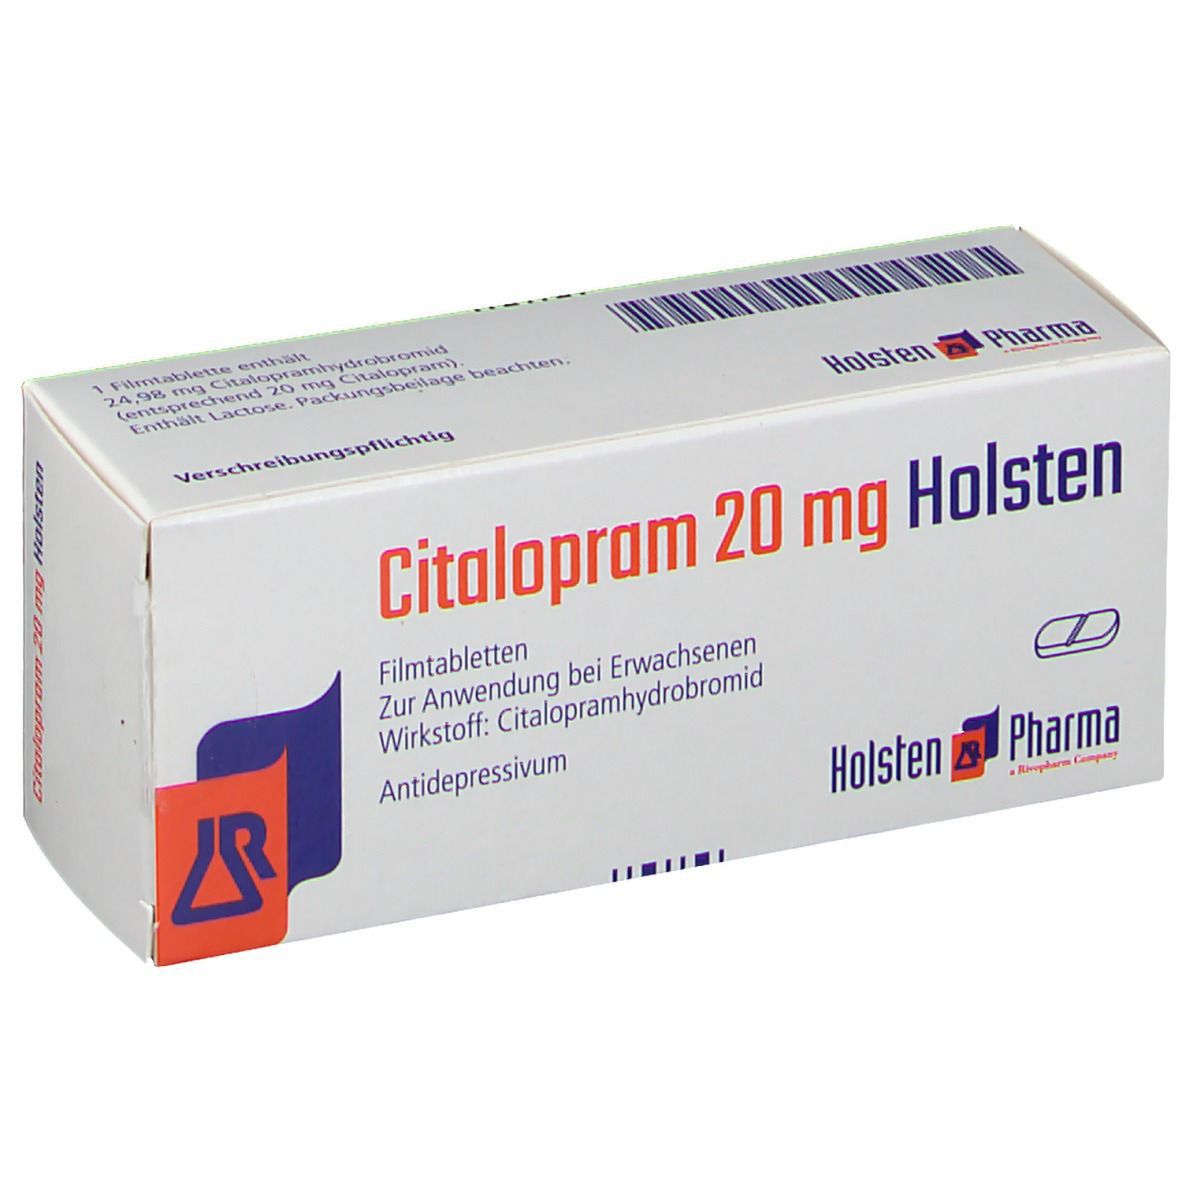 Citalopram 20 mg Holsten